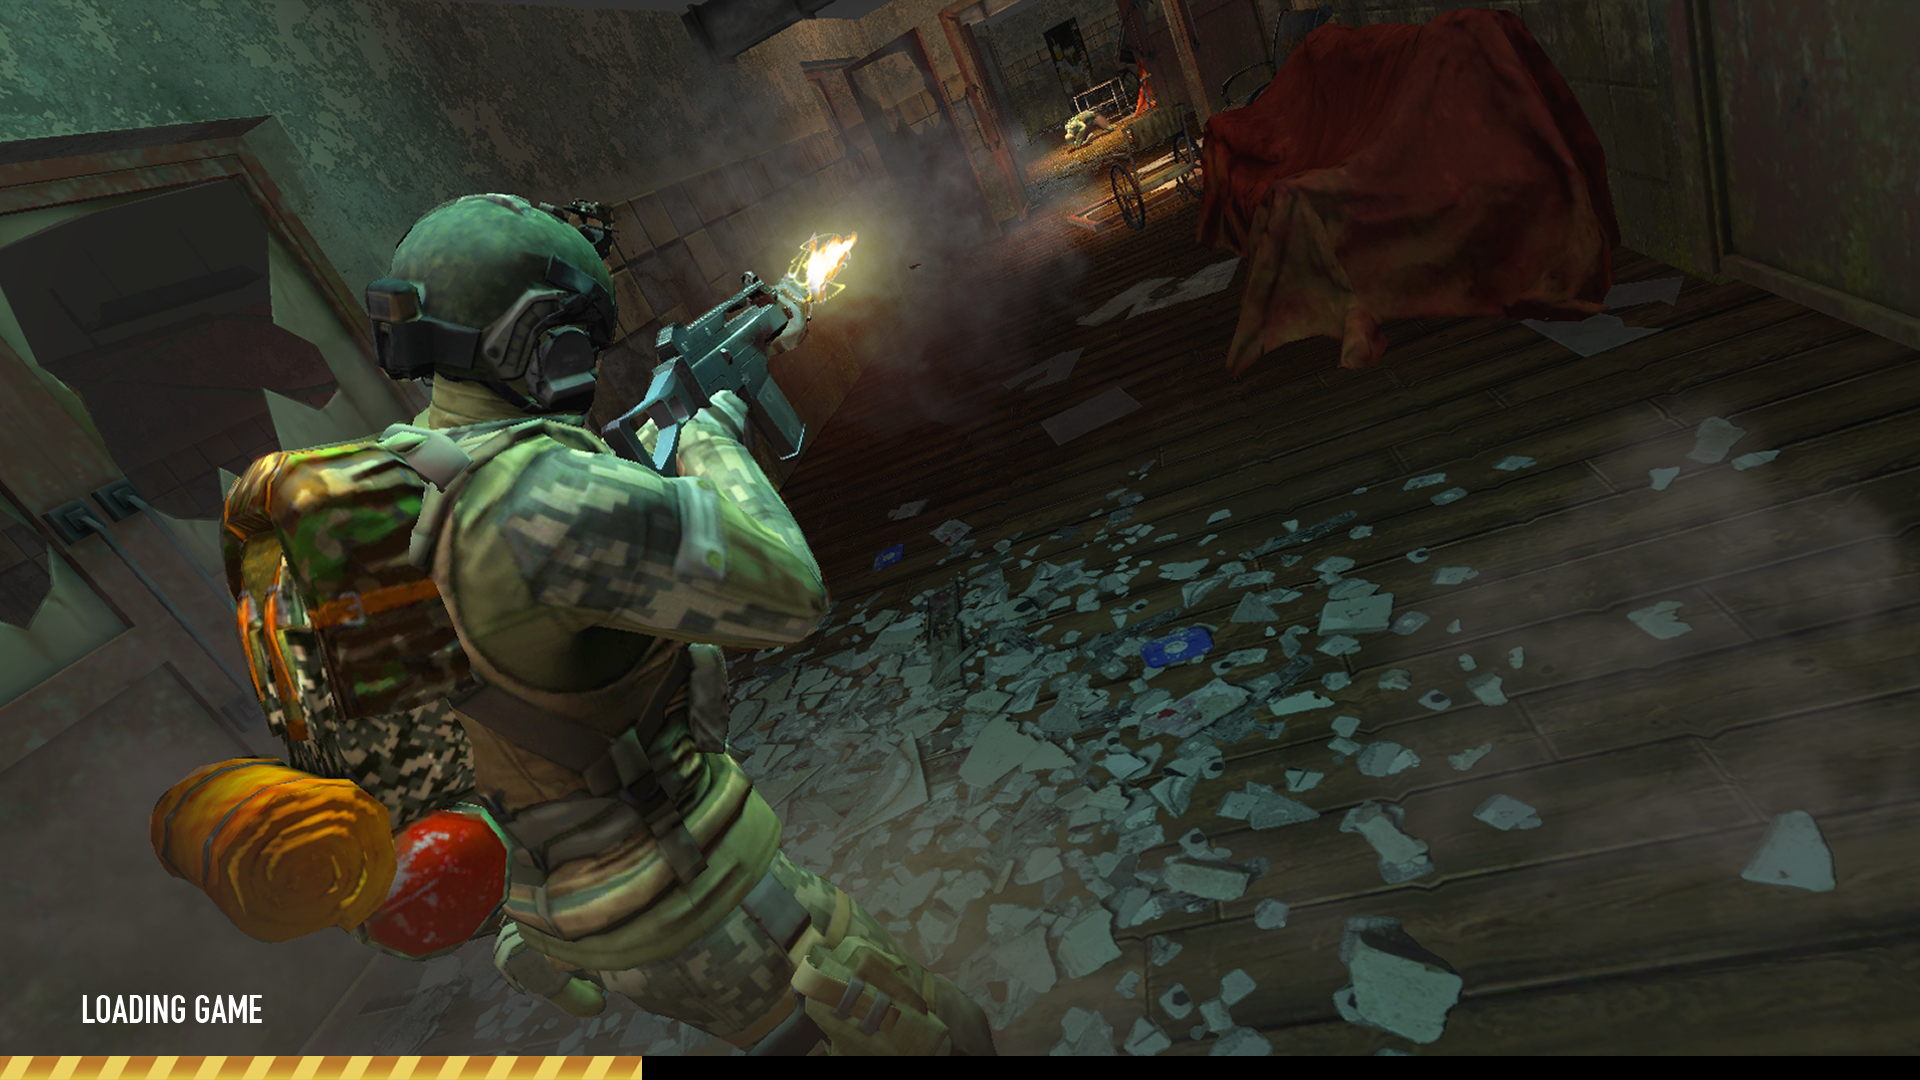 Screenshot 1 of Game zombie - Titik bertahan hidup 0.0.624